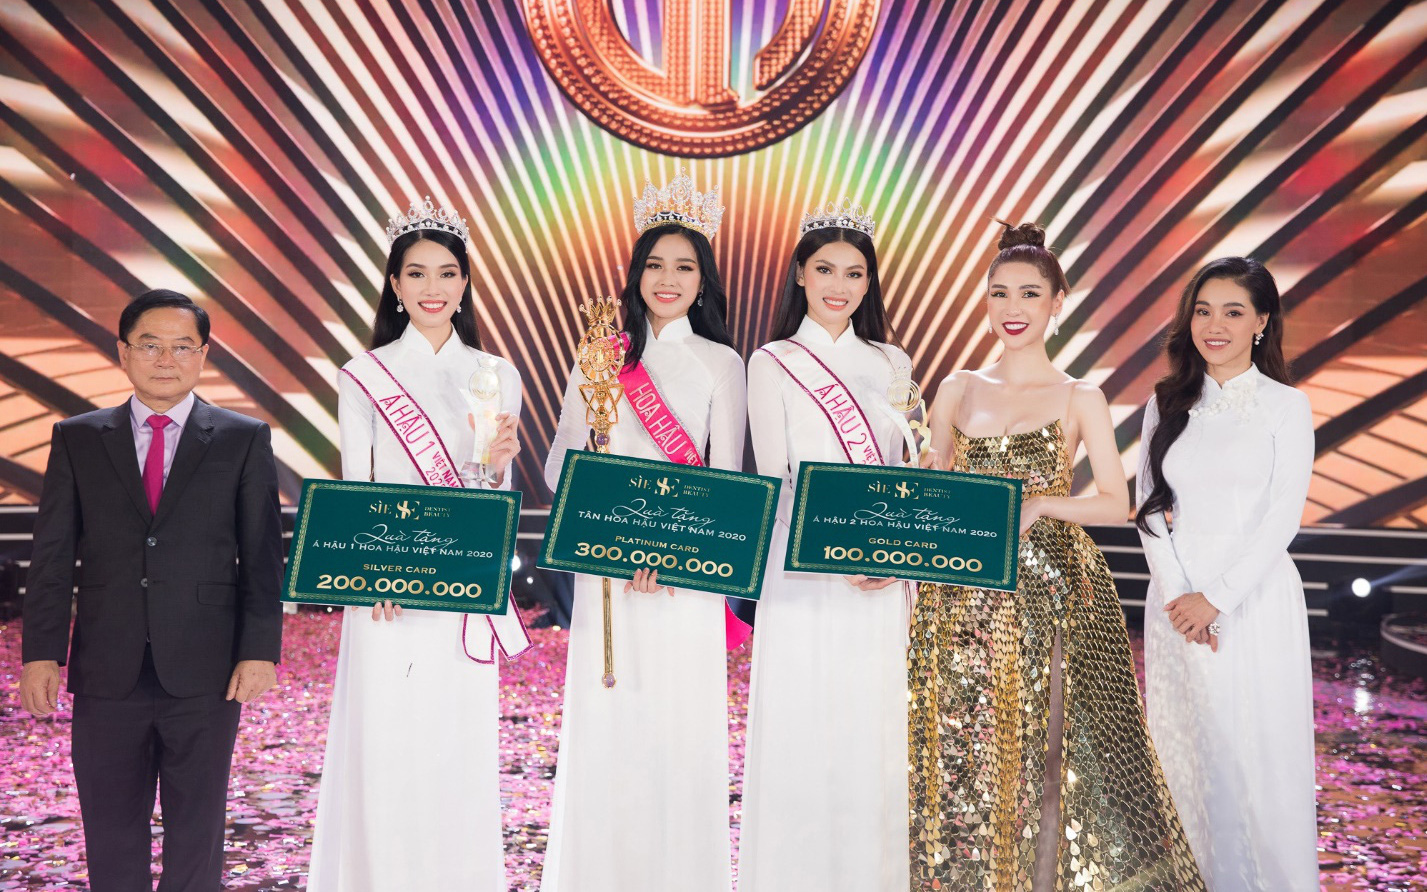 CEO Sìe Dentist trao tặng phần thưởng 600 triệu đồng cho Top 3 Hoa hậu Việt Nam 2020